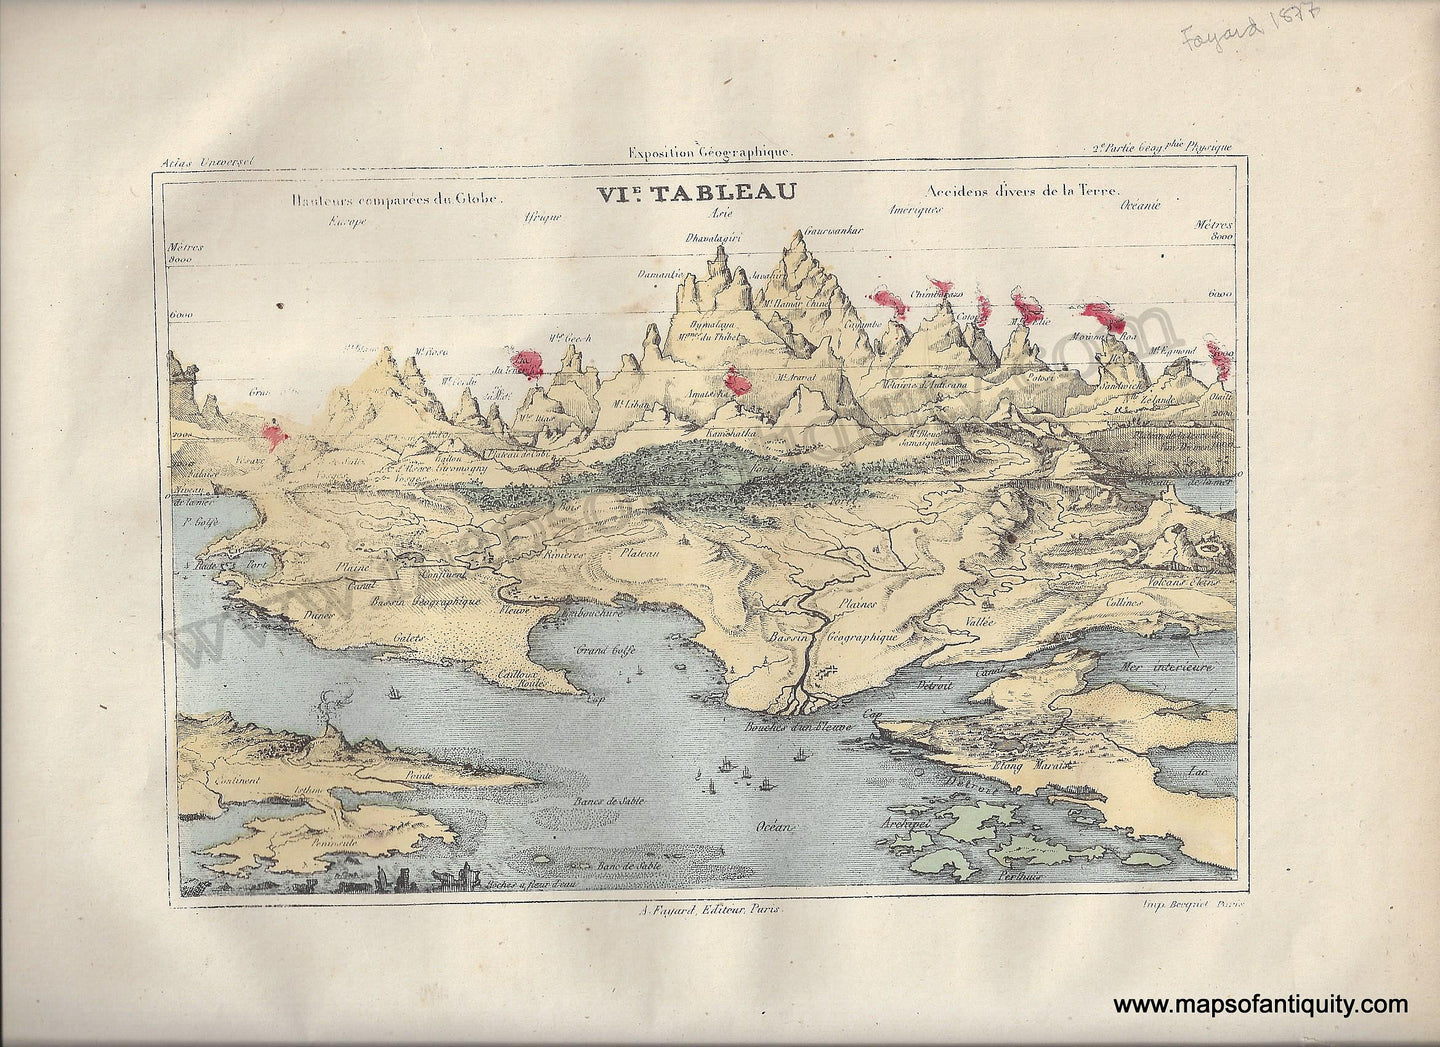 Antique-Map-VI-VIE-VI.E-Tableau-Diagram-Comparative-Mountains-Volcanoes-Hauteurs-comparees-du-Globe-Accidens-divers-de-la-Terre-Fayard-Atlas-Universel-French-1877-1870s-1800s-Mid-Late-19th-Century-Maps-of-Antiquity